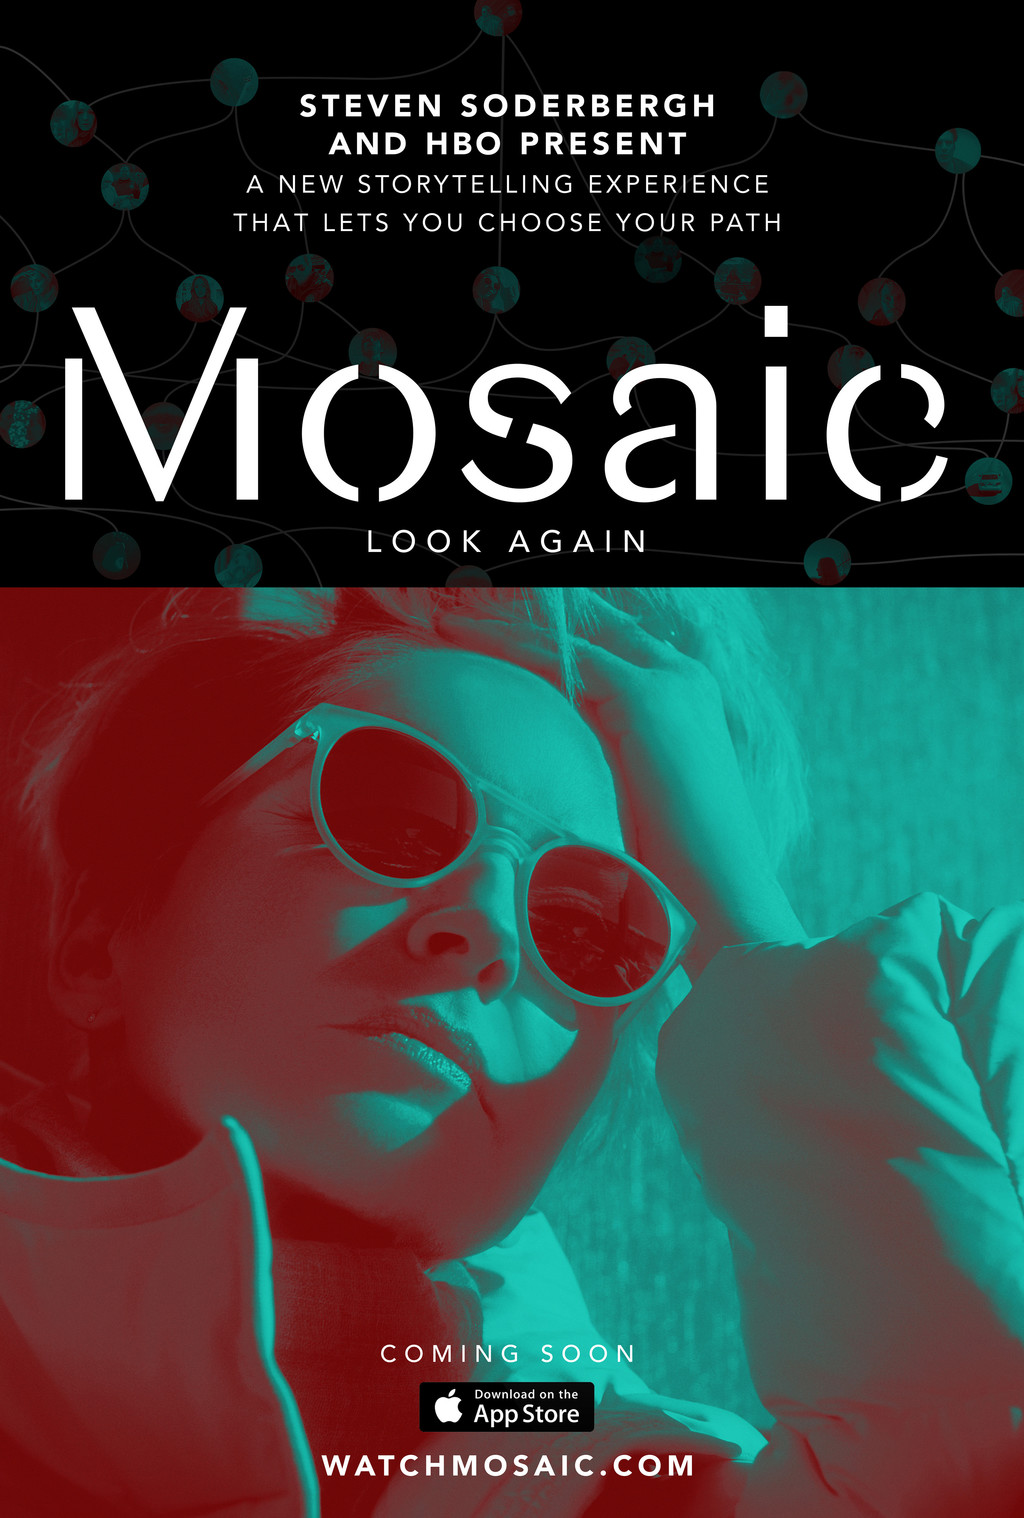 Mosaicc